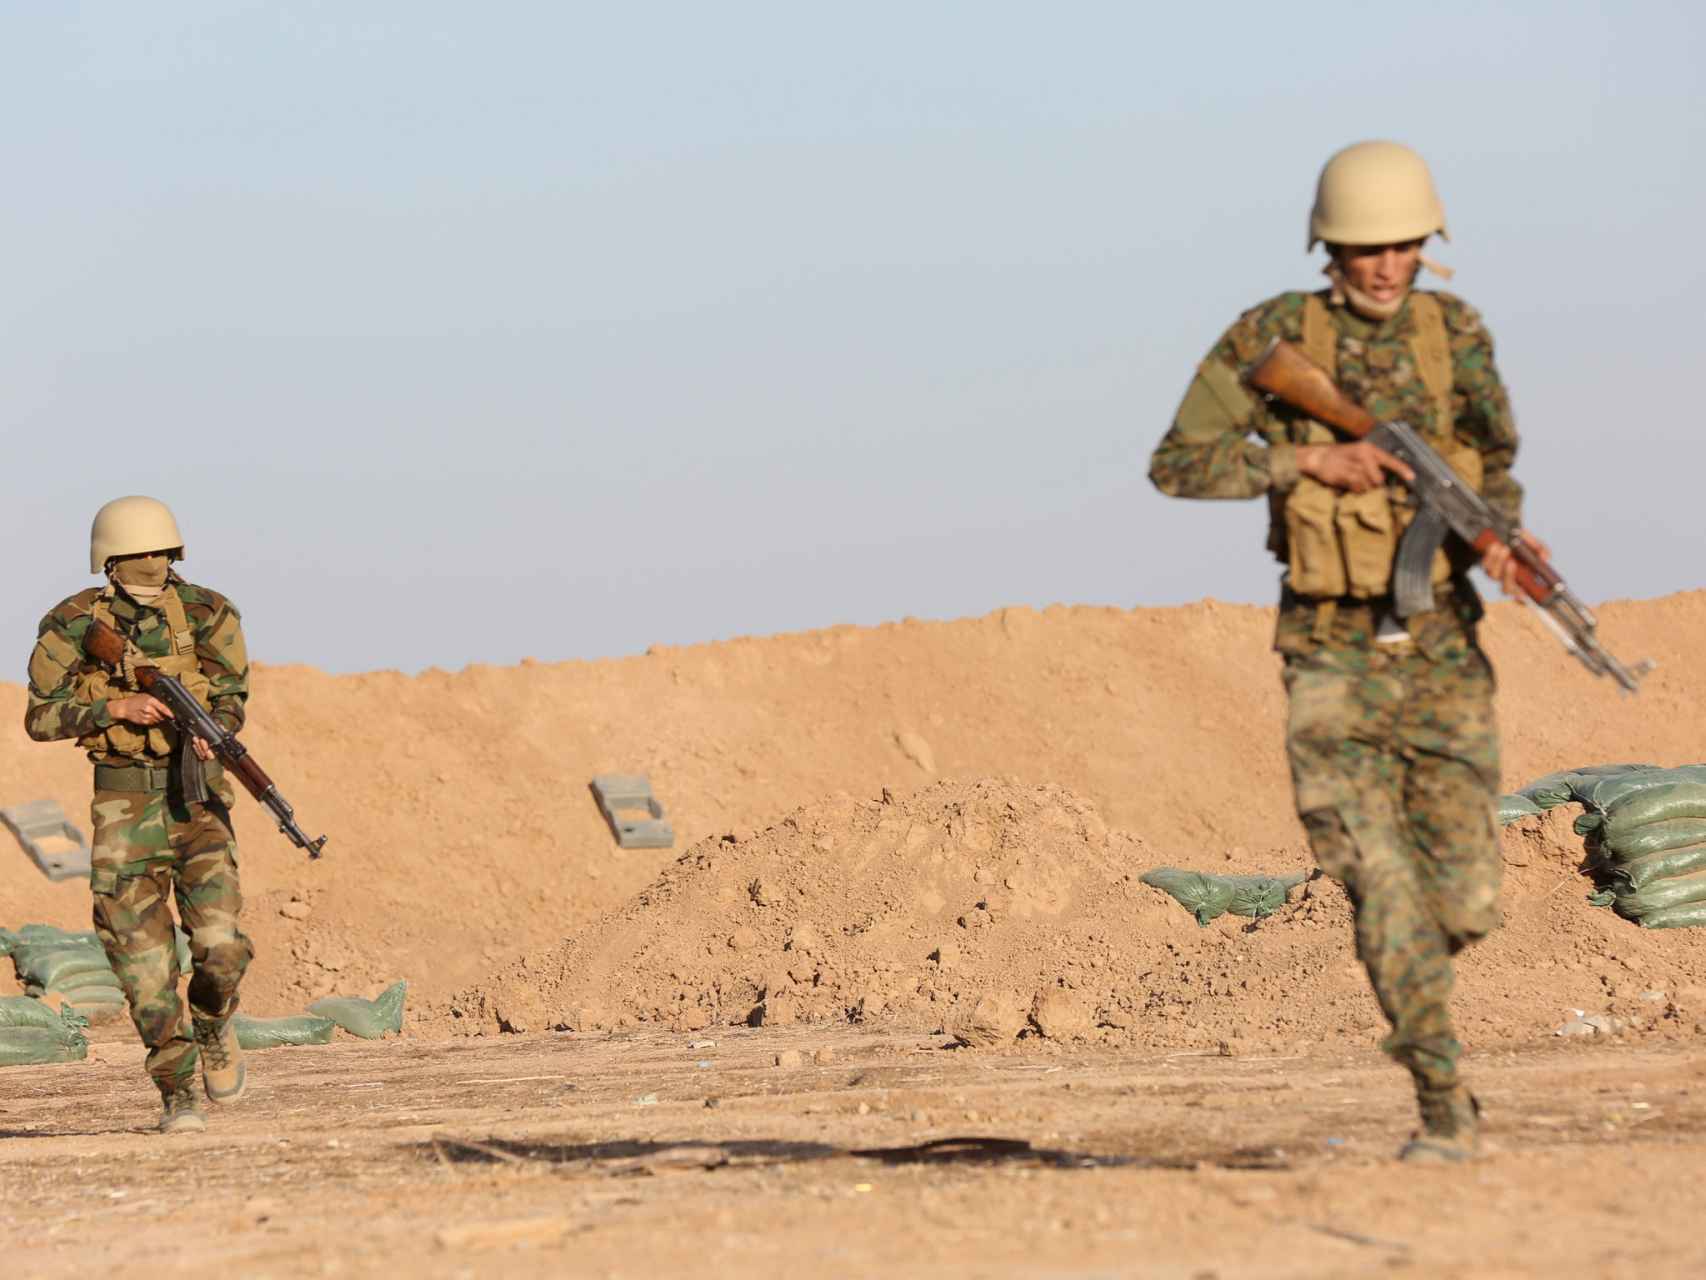 Los combatientes de la parte iraquí se entrenan para el asalto final y reconquista de Mosul.